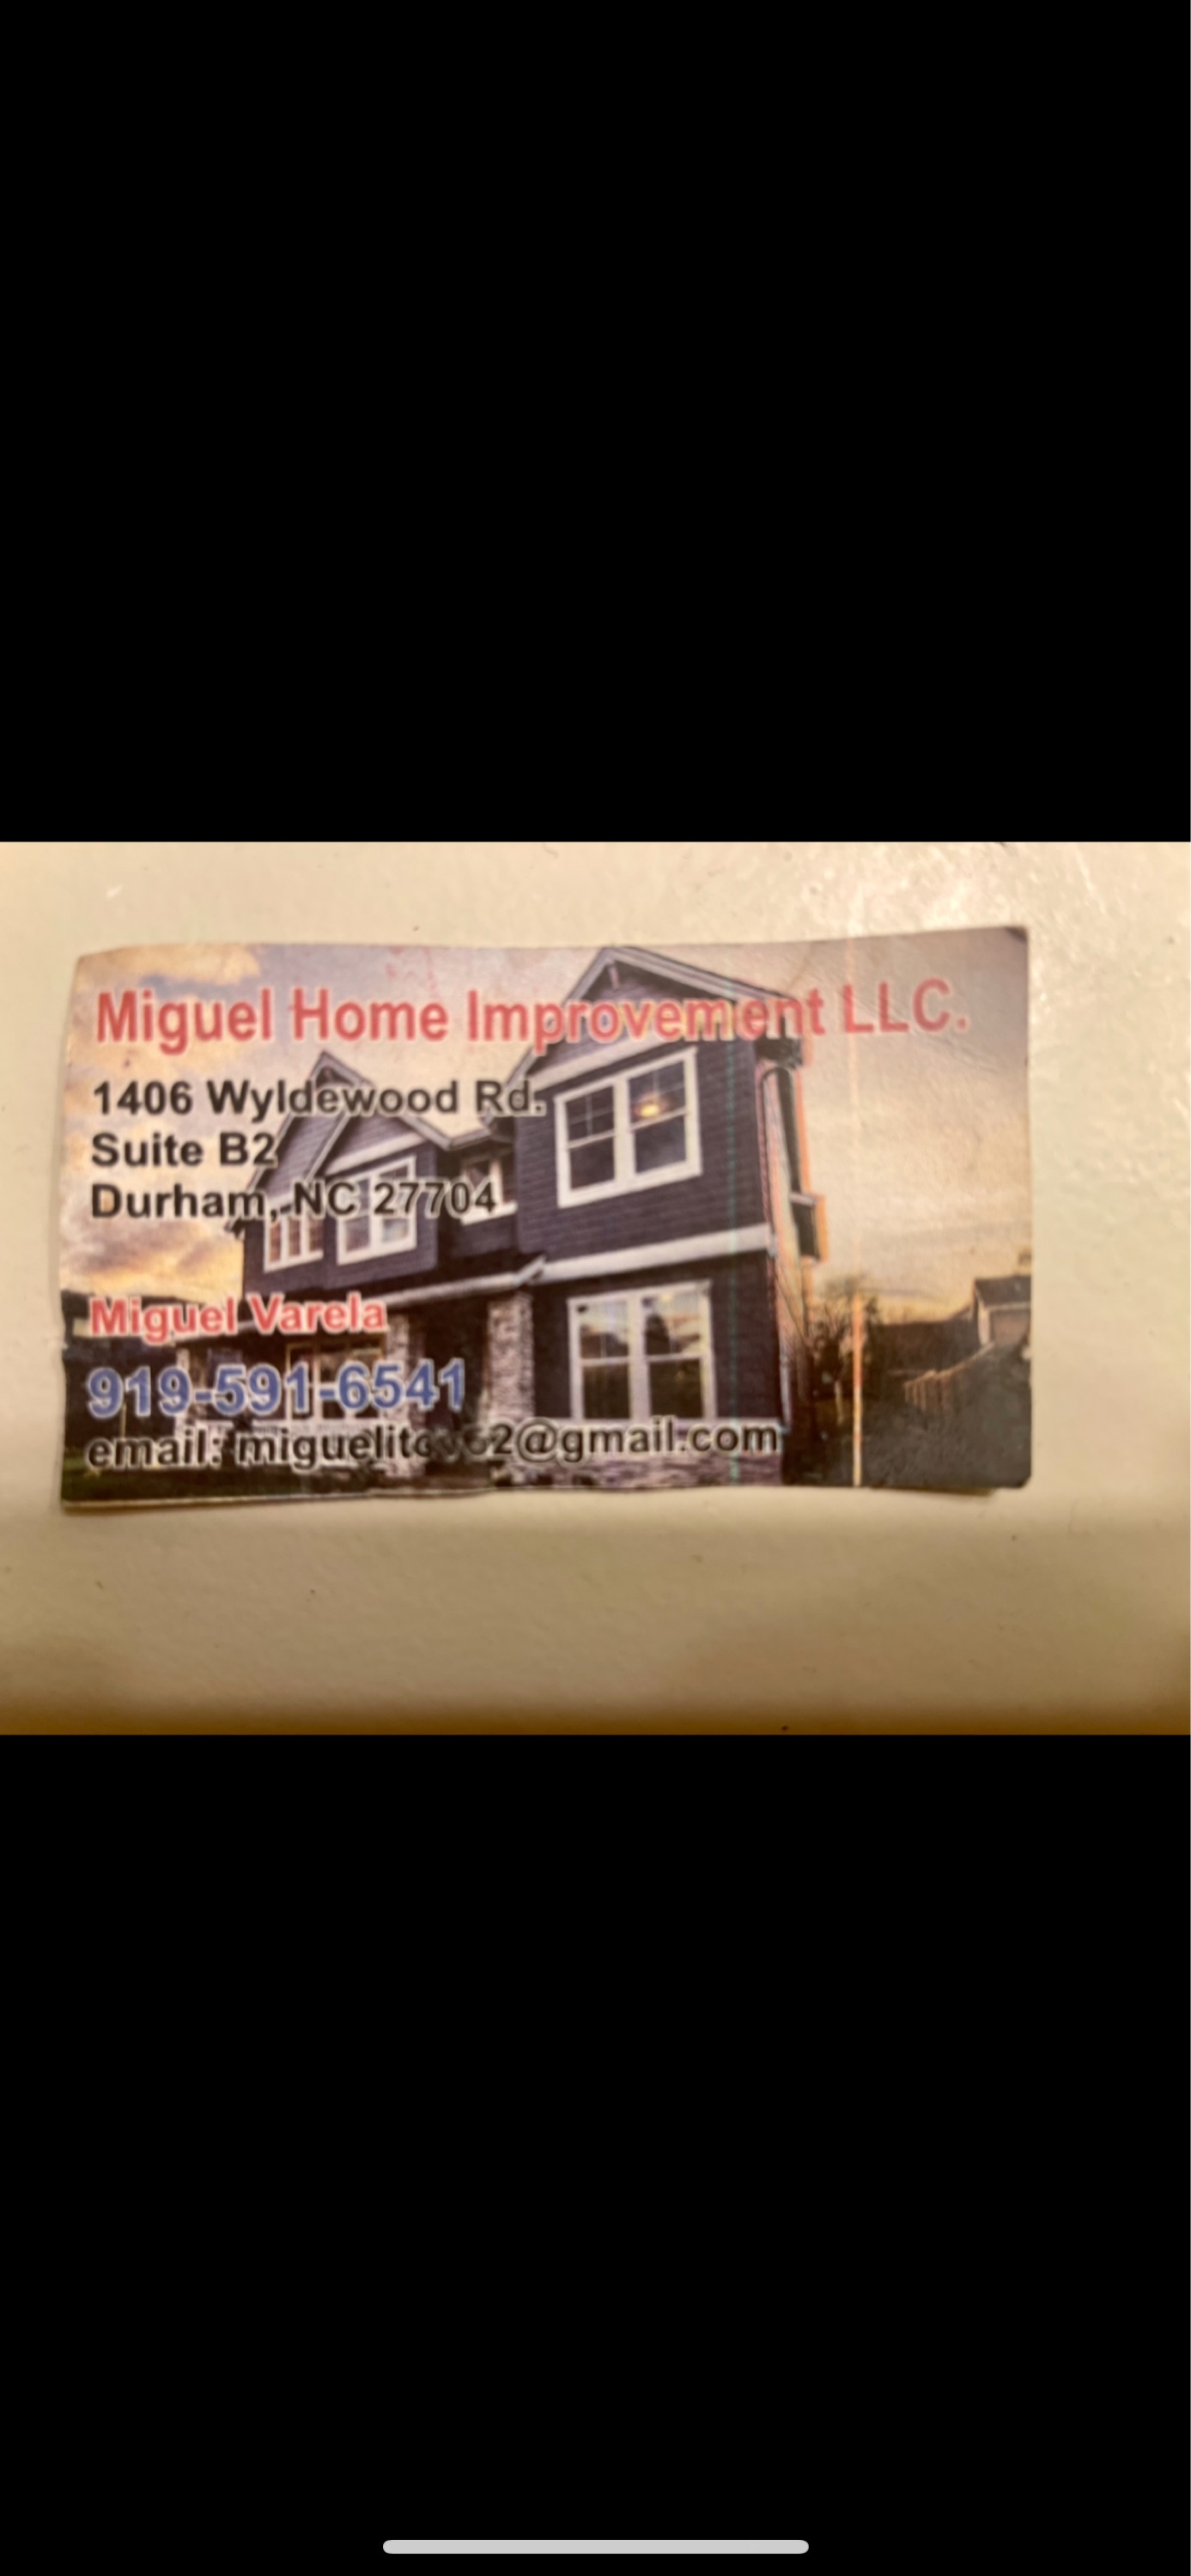 Miguel Home Improvement, LLC Logo